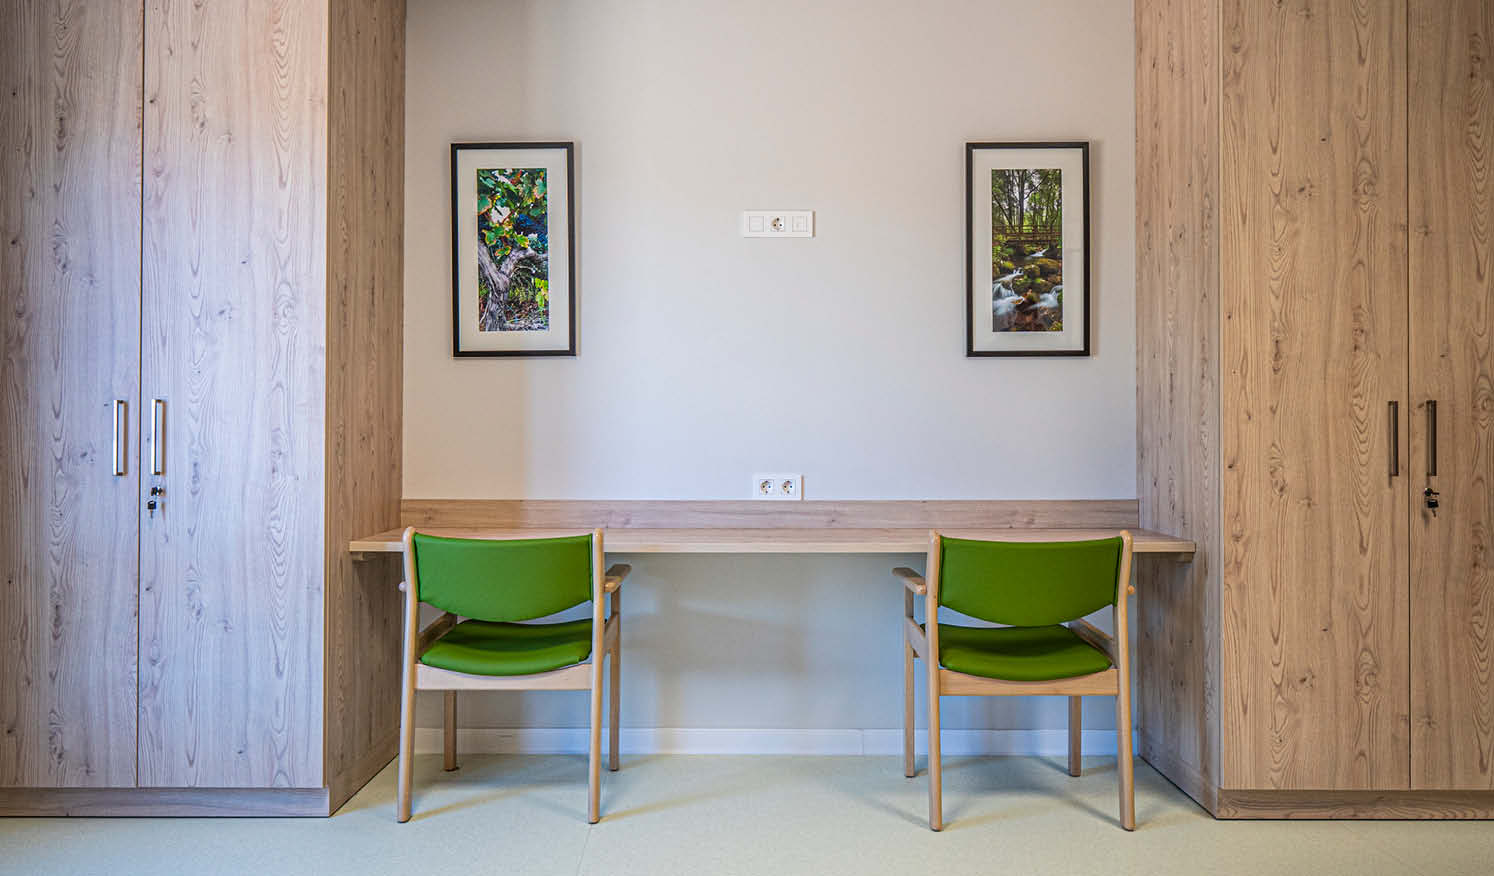 Residencia Amboage_Galería Metodología_Detalle de mobiliario con sillas y mesas en madera para habitaciones de residencia de ancianos